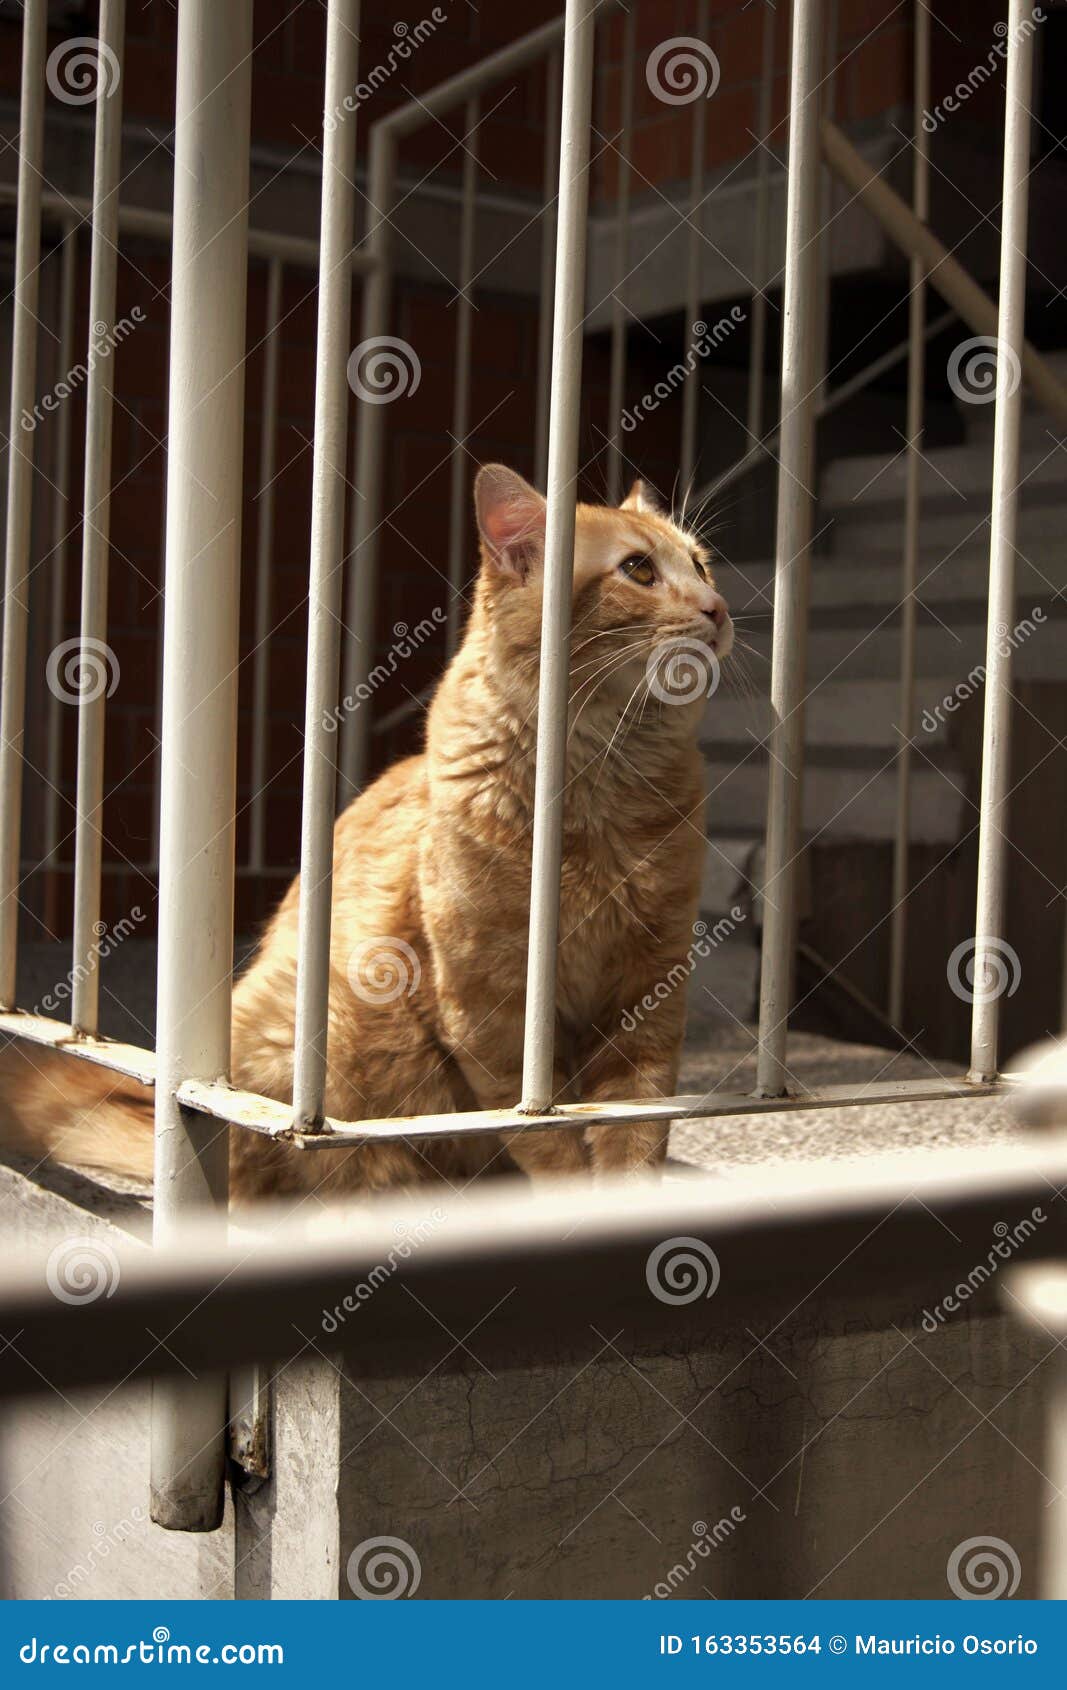 cat posing stairs gato